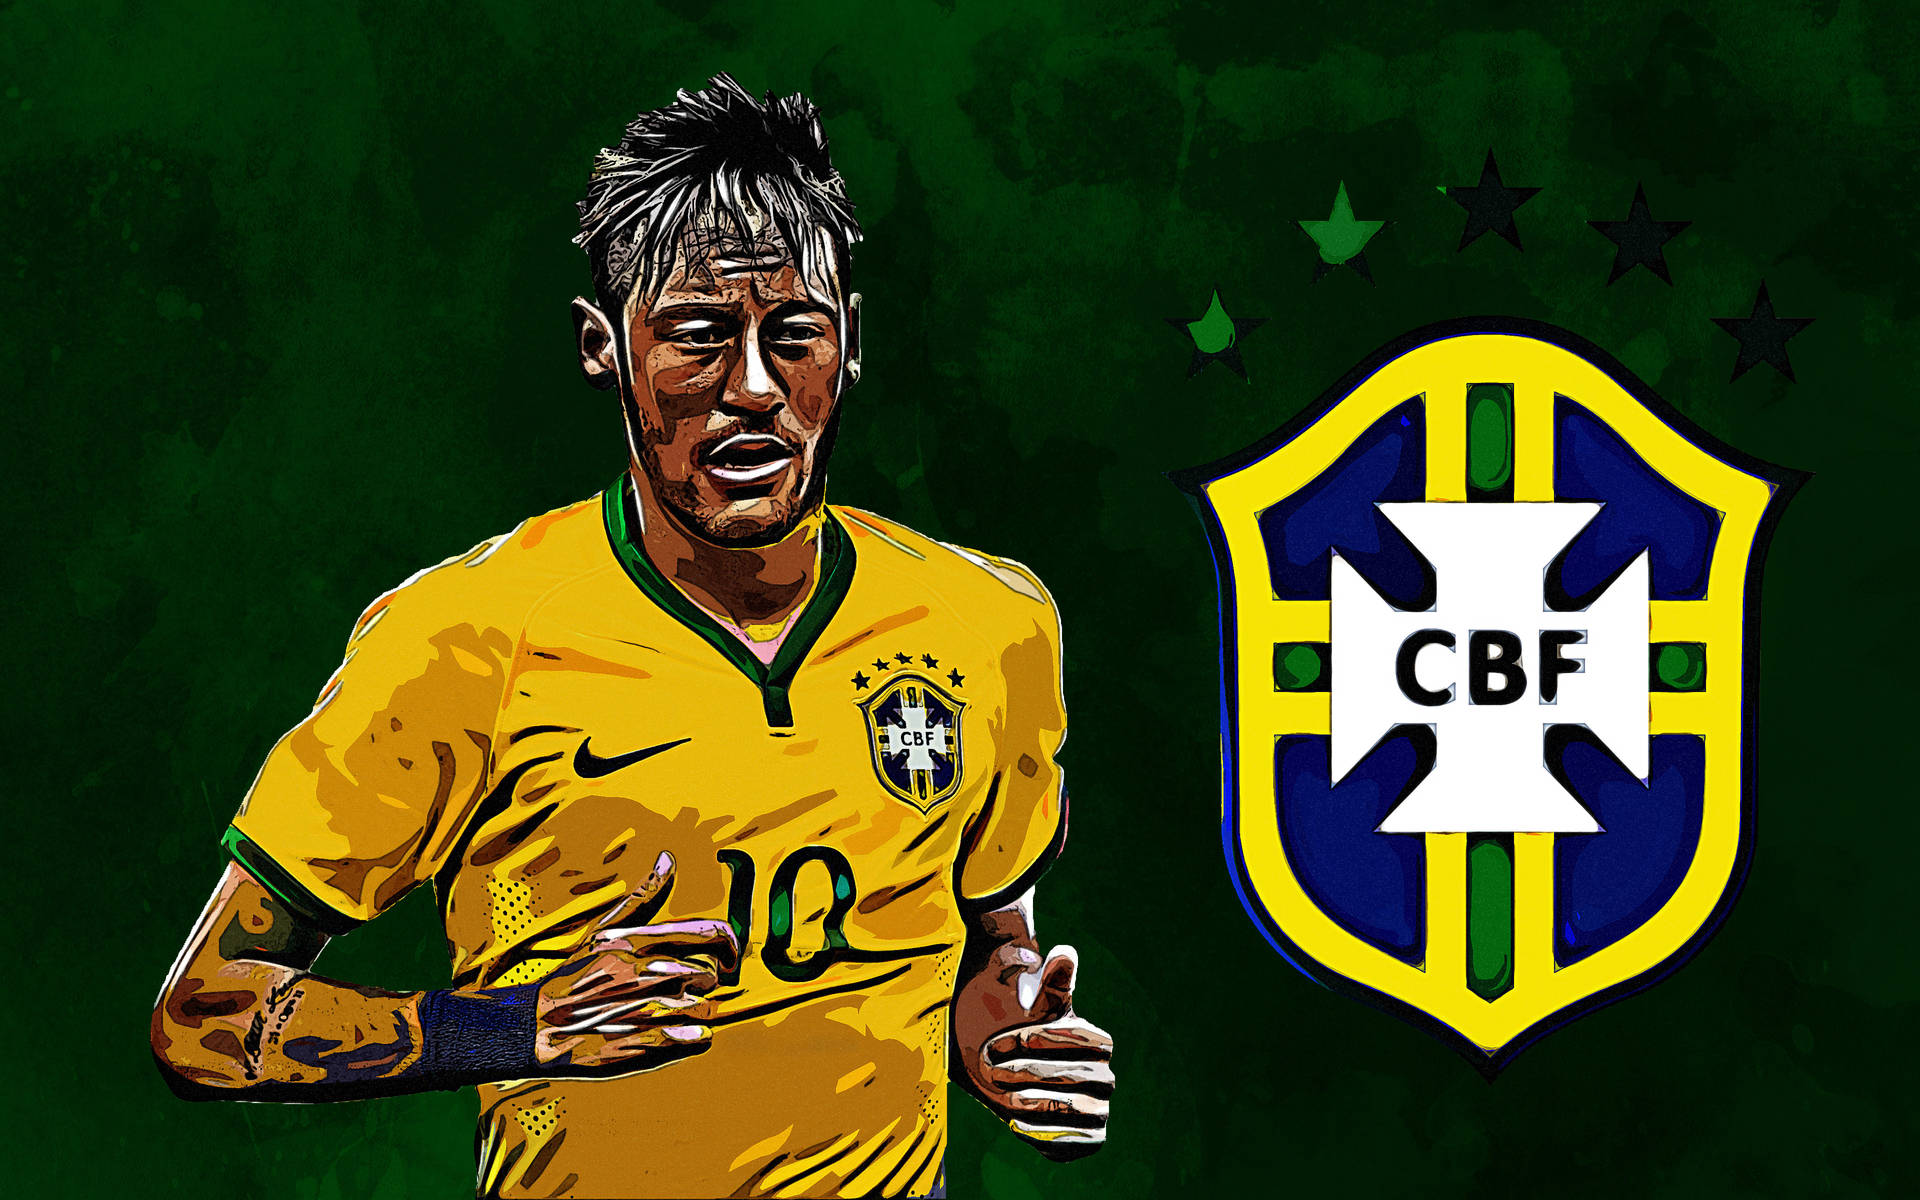 Neymar Jr In Cbf Jersey